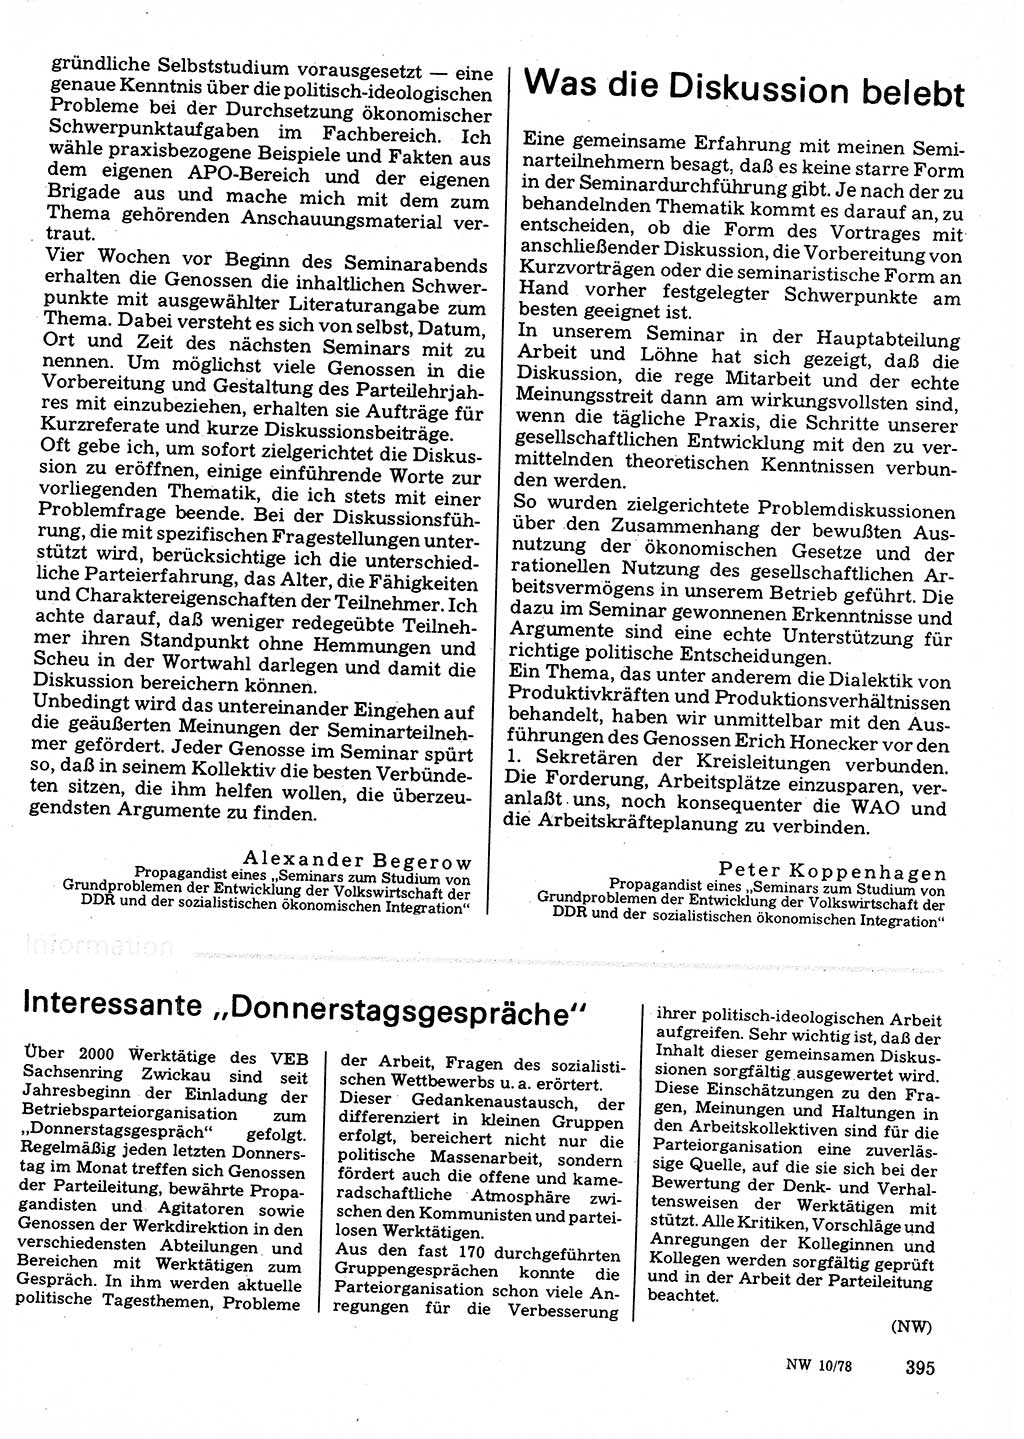 Neuer Weg (NW), Organ des Zentralkomitees (ZK) der SED (Sozialistische Einheitspartei Deutschlands) für Fragen des Parteilebens, 33. Jahrgang [Deutsche Demokratische Republik (DDR)] 1978, Seite 395 (NW ZK SED DDR 1978, S. 395)